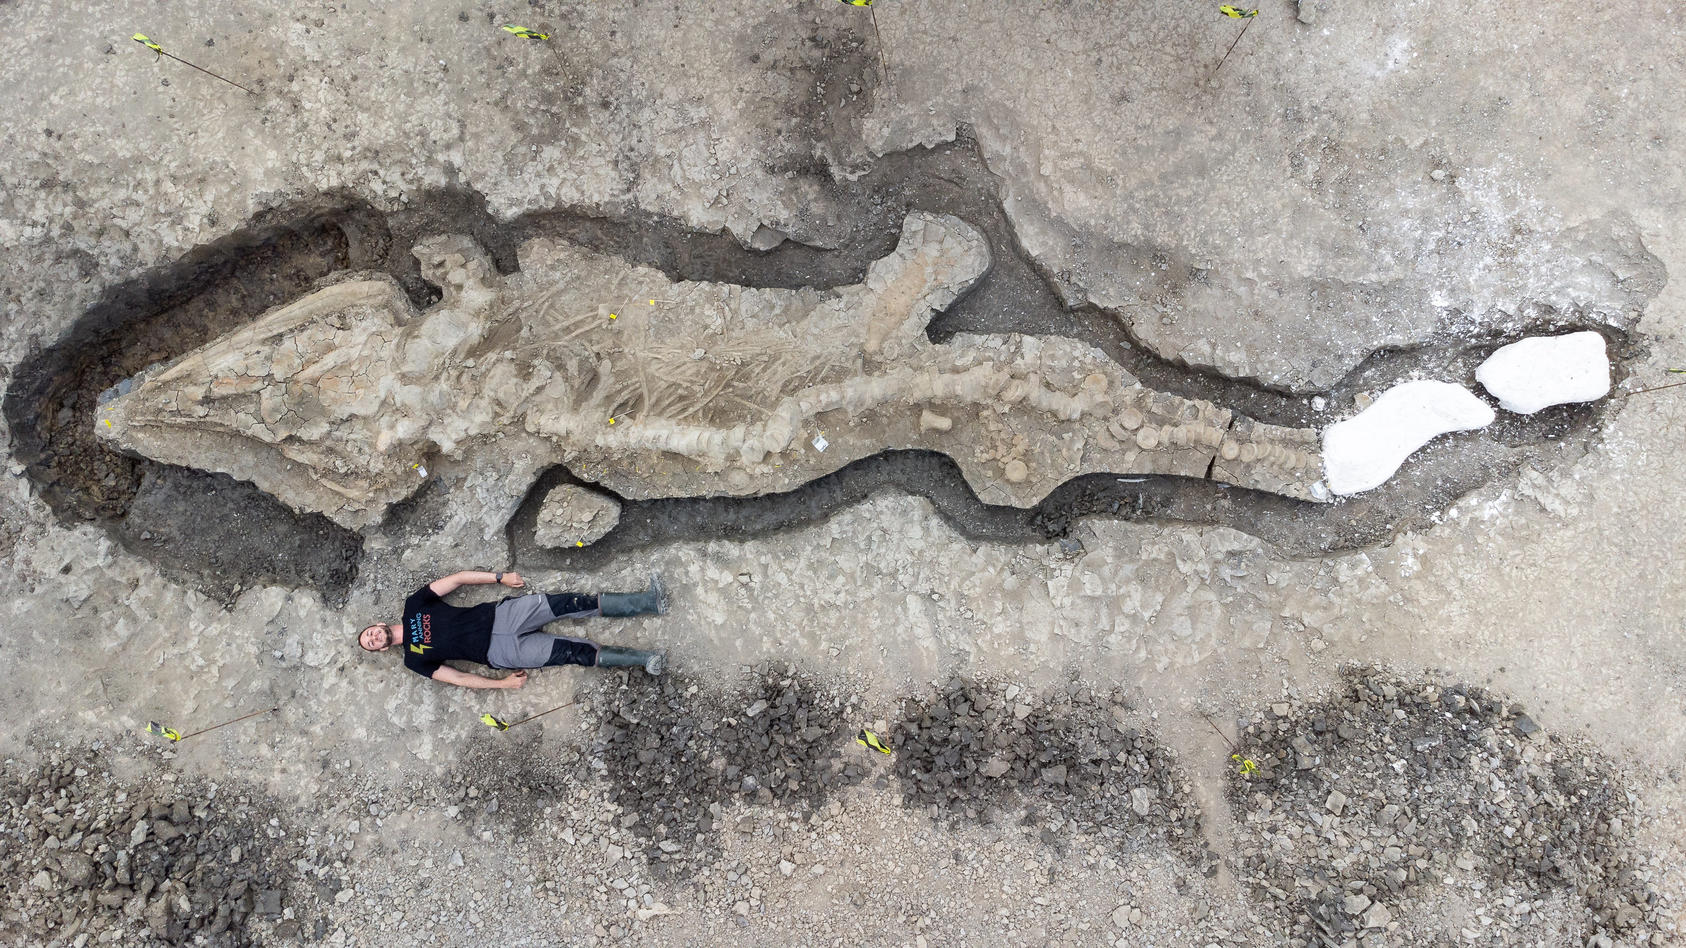 HANDOUT - 10.01.2022, Großbritannien, --: Undatiertes Handout-Foto, herausgegeben von Anglian Water, zeigt Paläontologen bei der Arbeit an dem Ichthyosaurier-Skelett, das im Rutland Nature Reserve gefunden wurde. Zehn Meter ist es lang und allein der